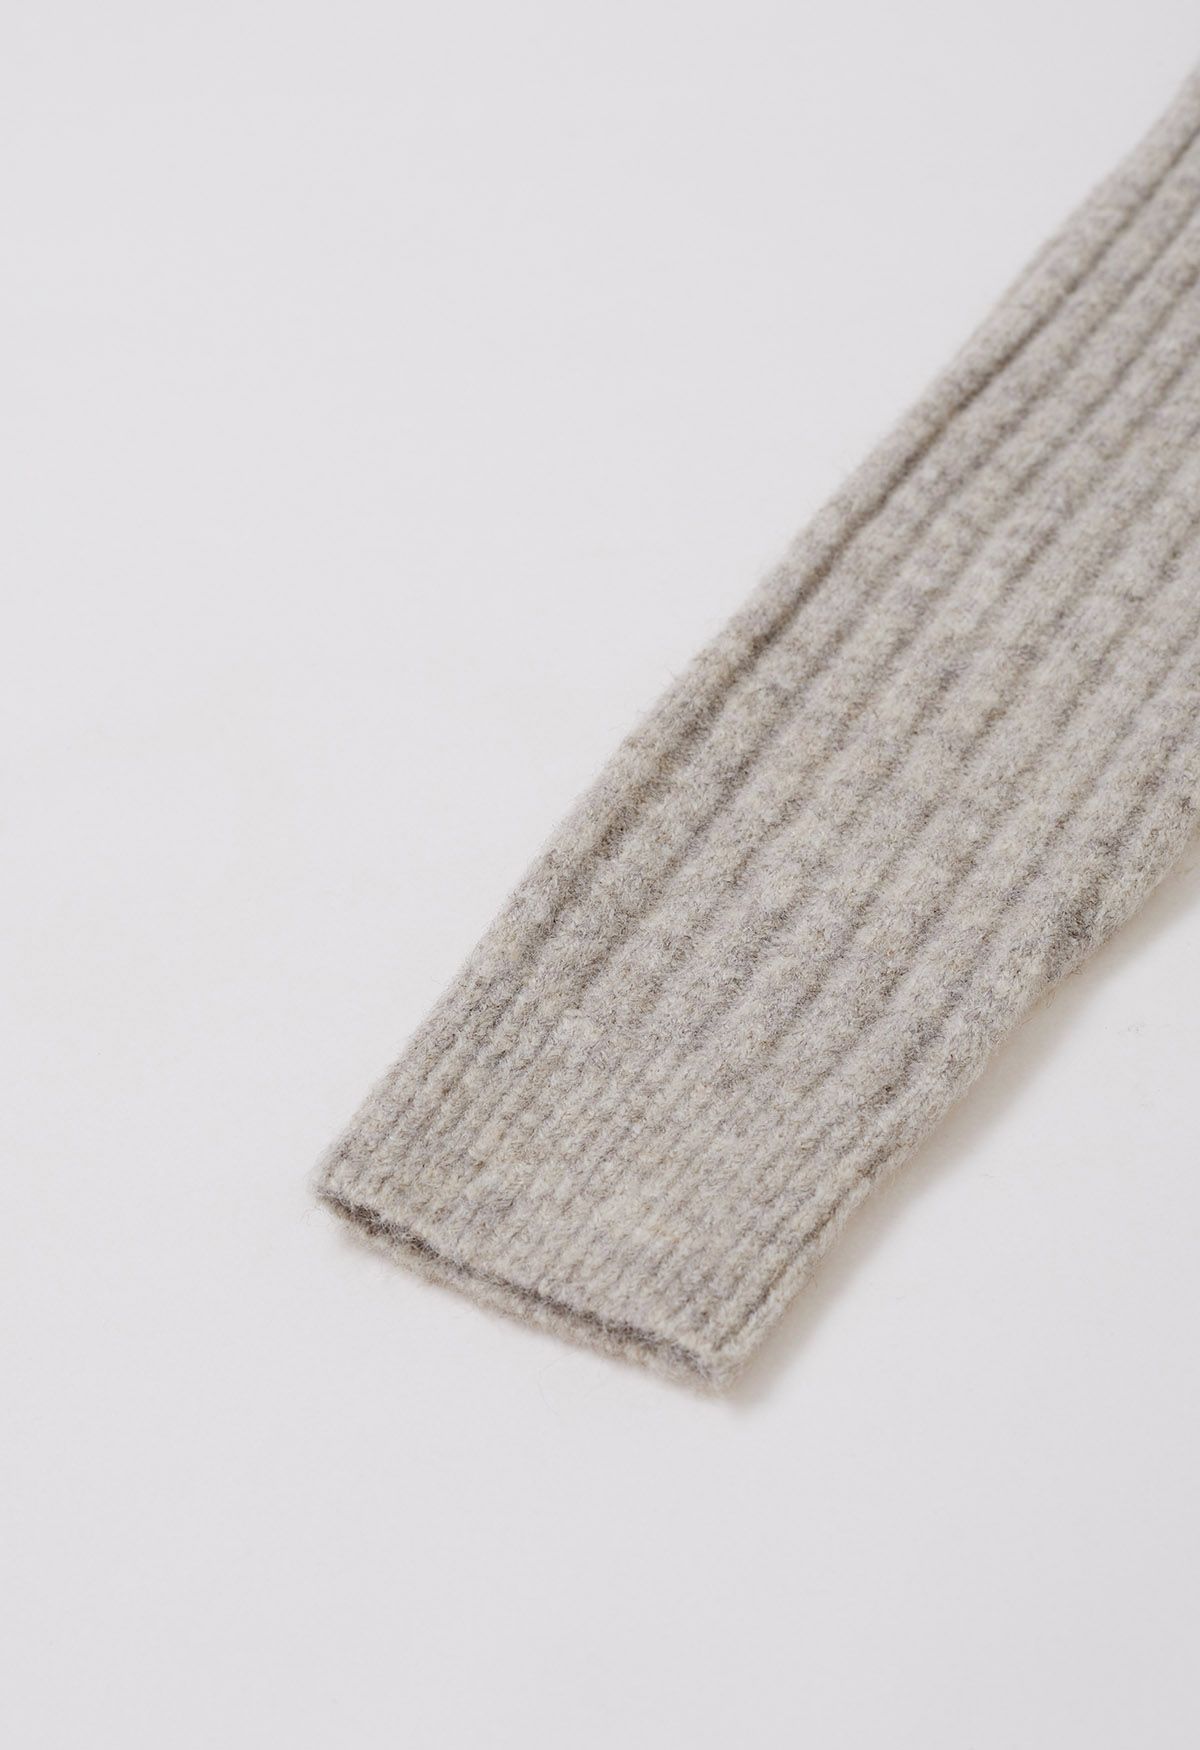 Conjunto de falda y top de mezcla de lana con cintura cruzada en color avena